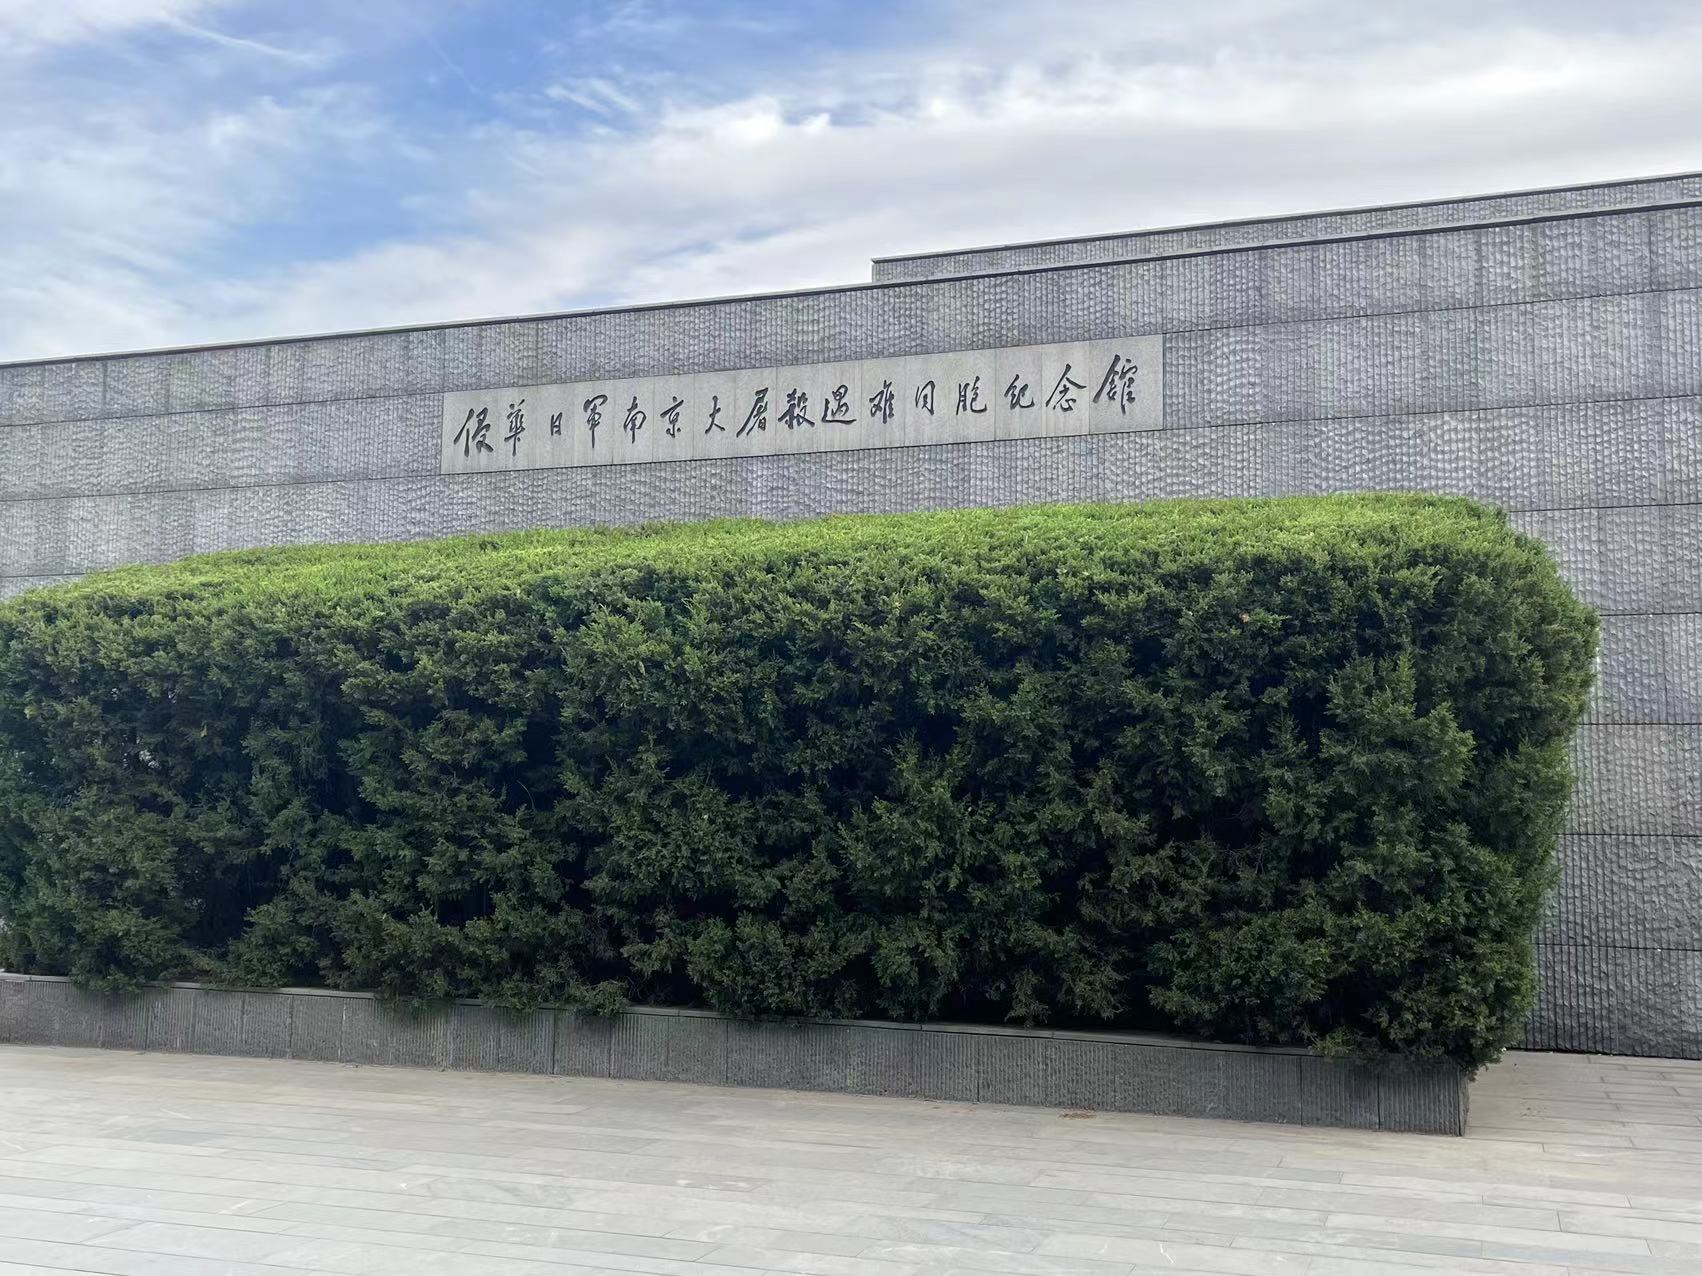 Perusahaan kita ngatur kunjungan menyang Balai Peringatan Korban ing Pembantaian Nanjing